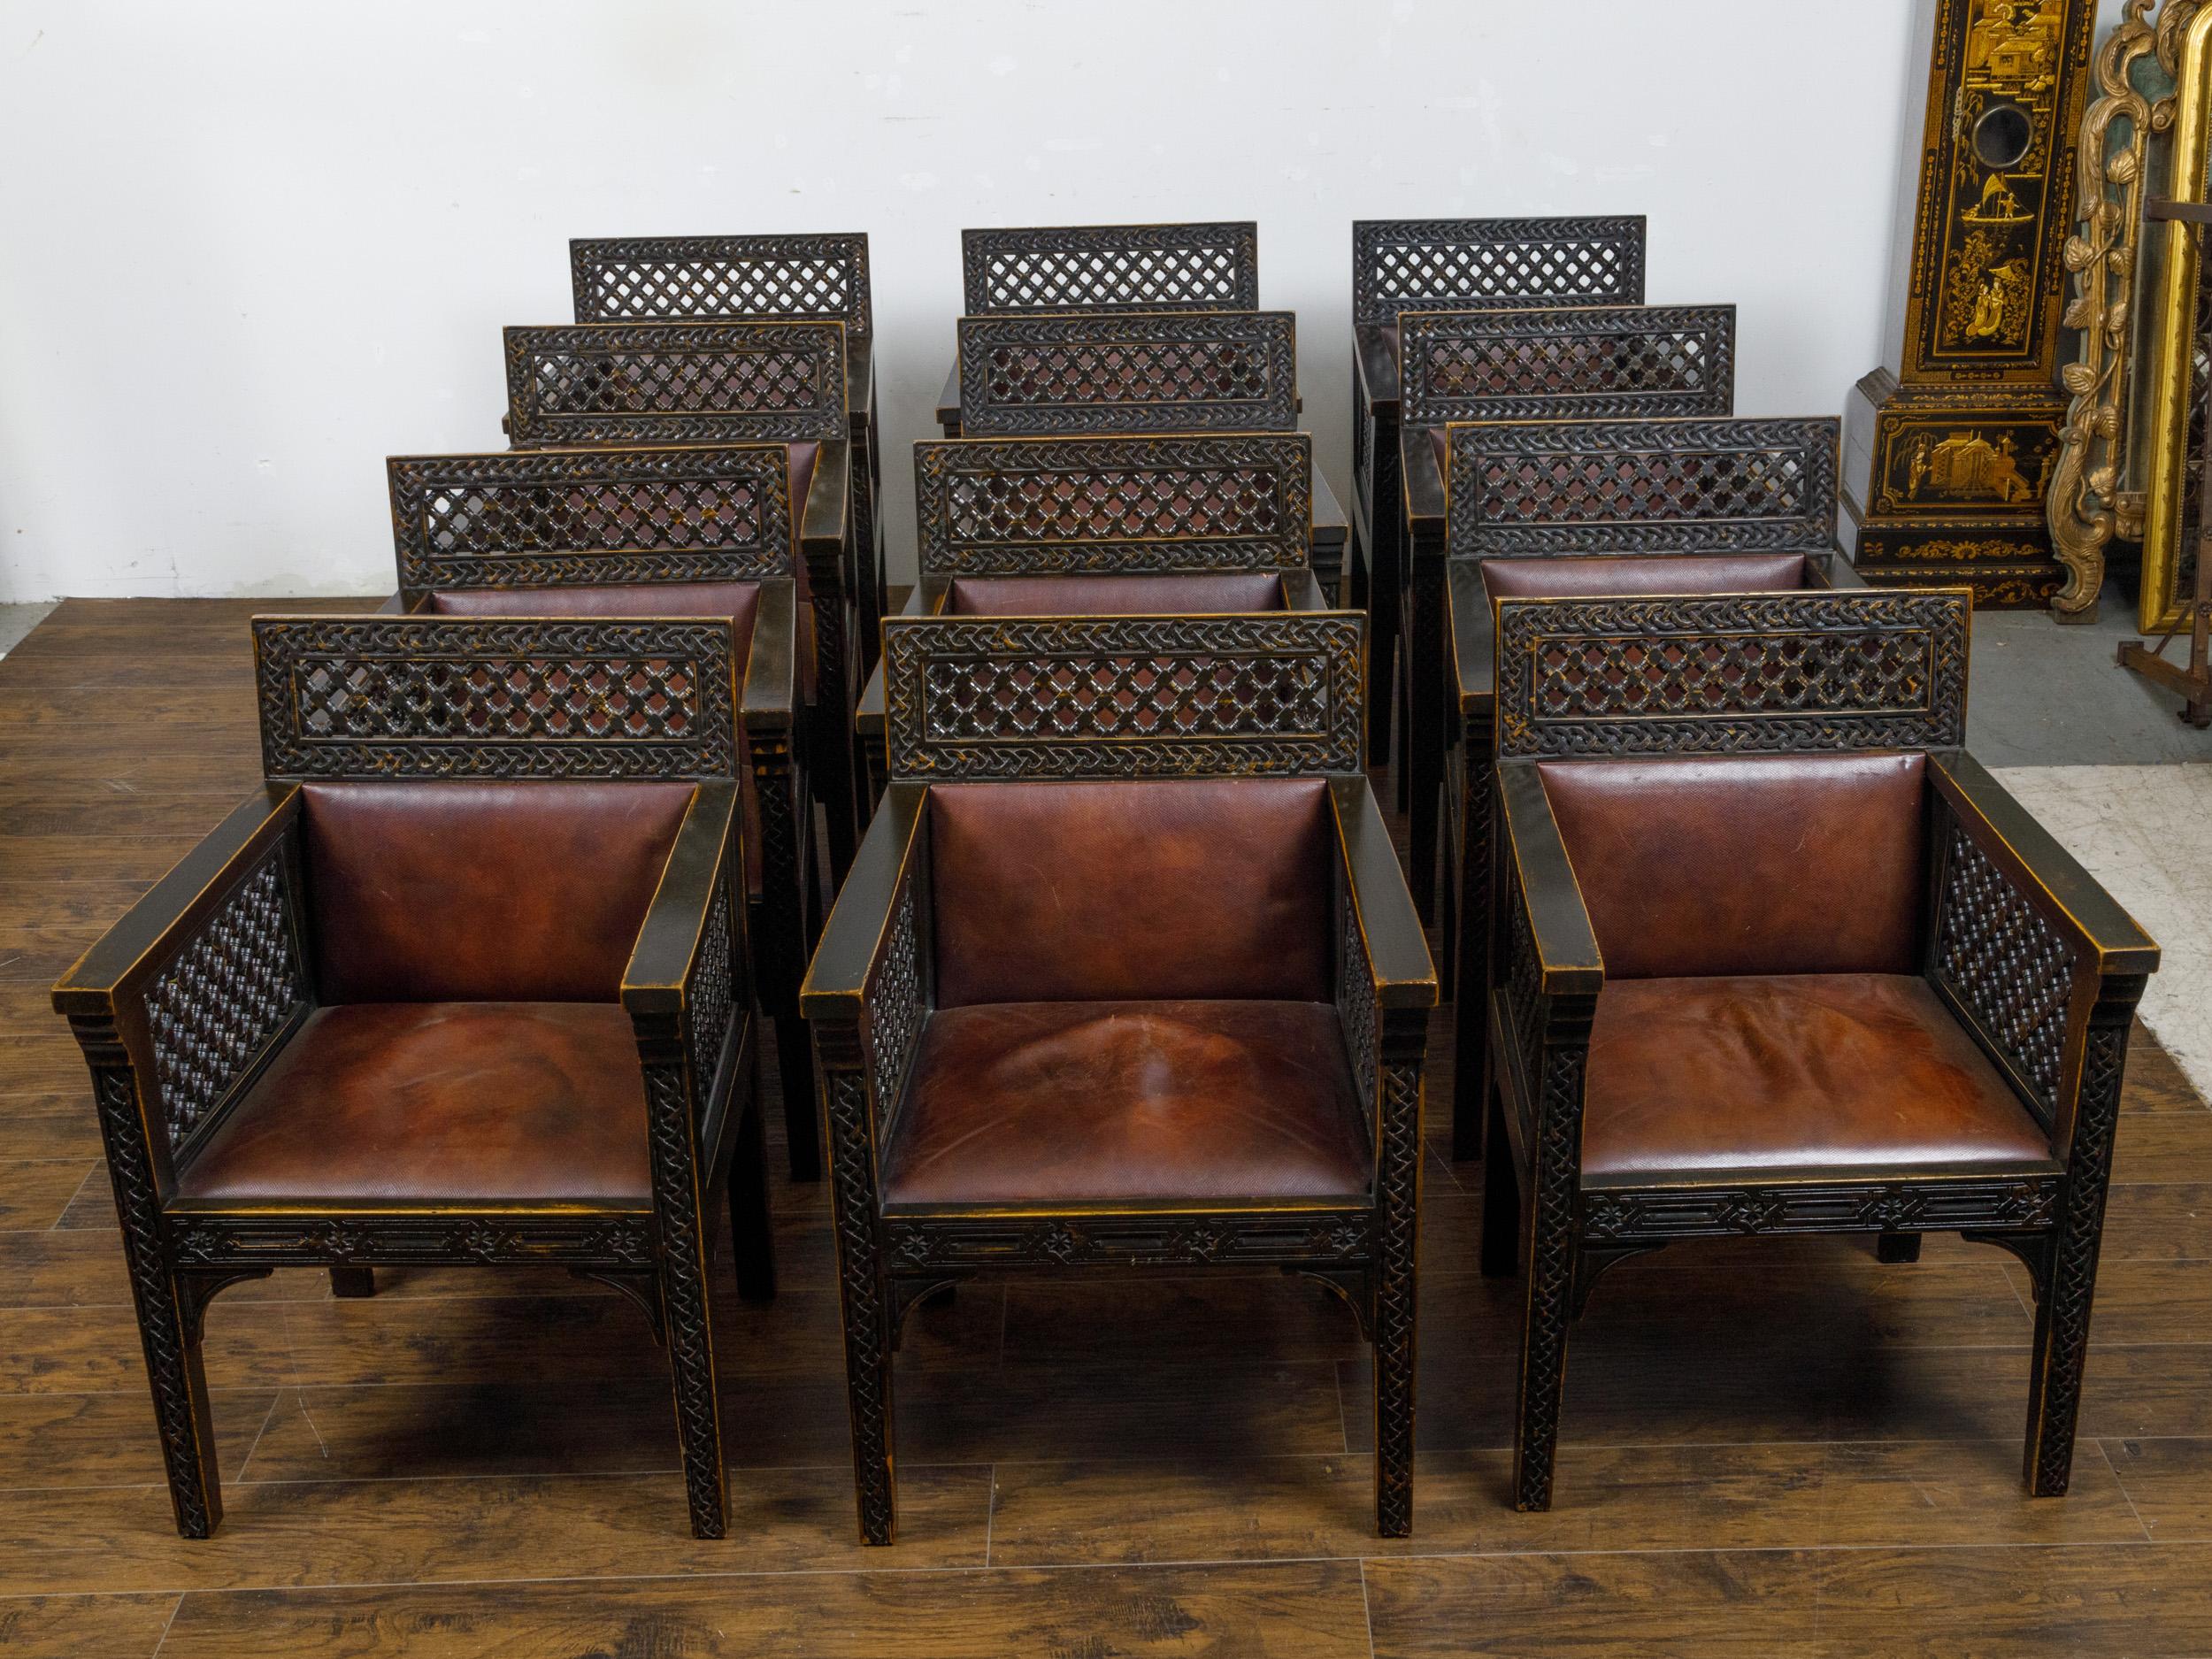 Un ensemble de 12 fauteuils marocains en bois ébonisé datant d'environ 1900 avec un décor sculpté et des sièges et dossiers en cuir. Réalisé avec le souci du détail, cet ensemble de douze fauteuils marocains en bois ébonisé datant d'environ 1900